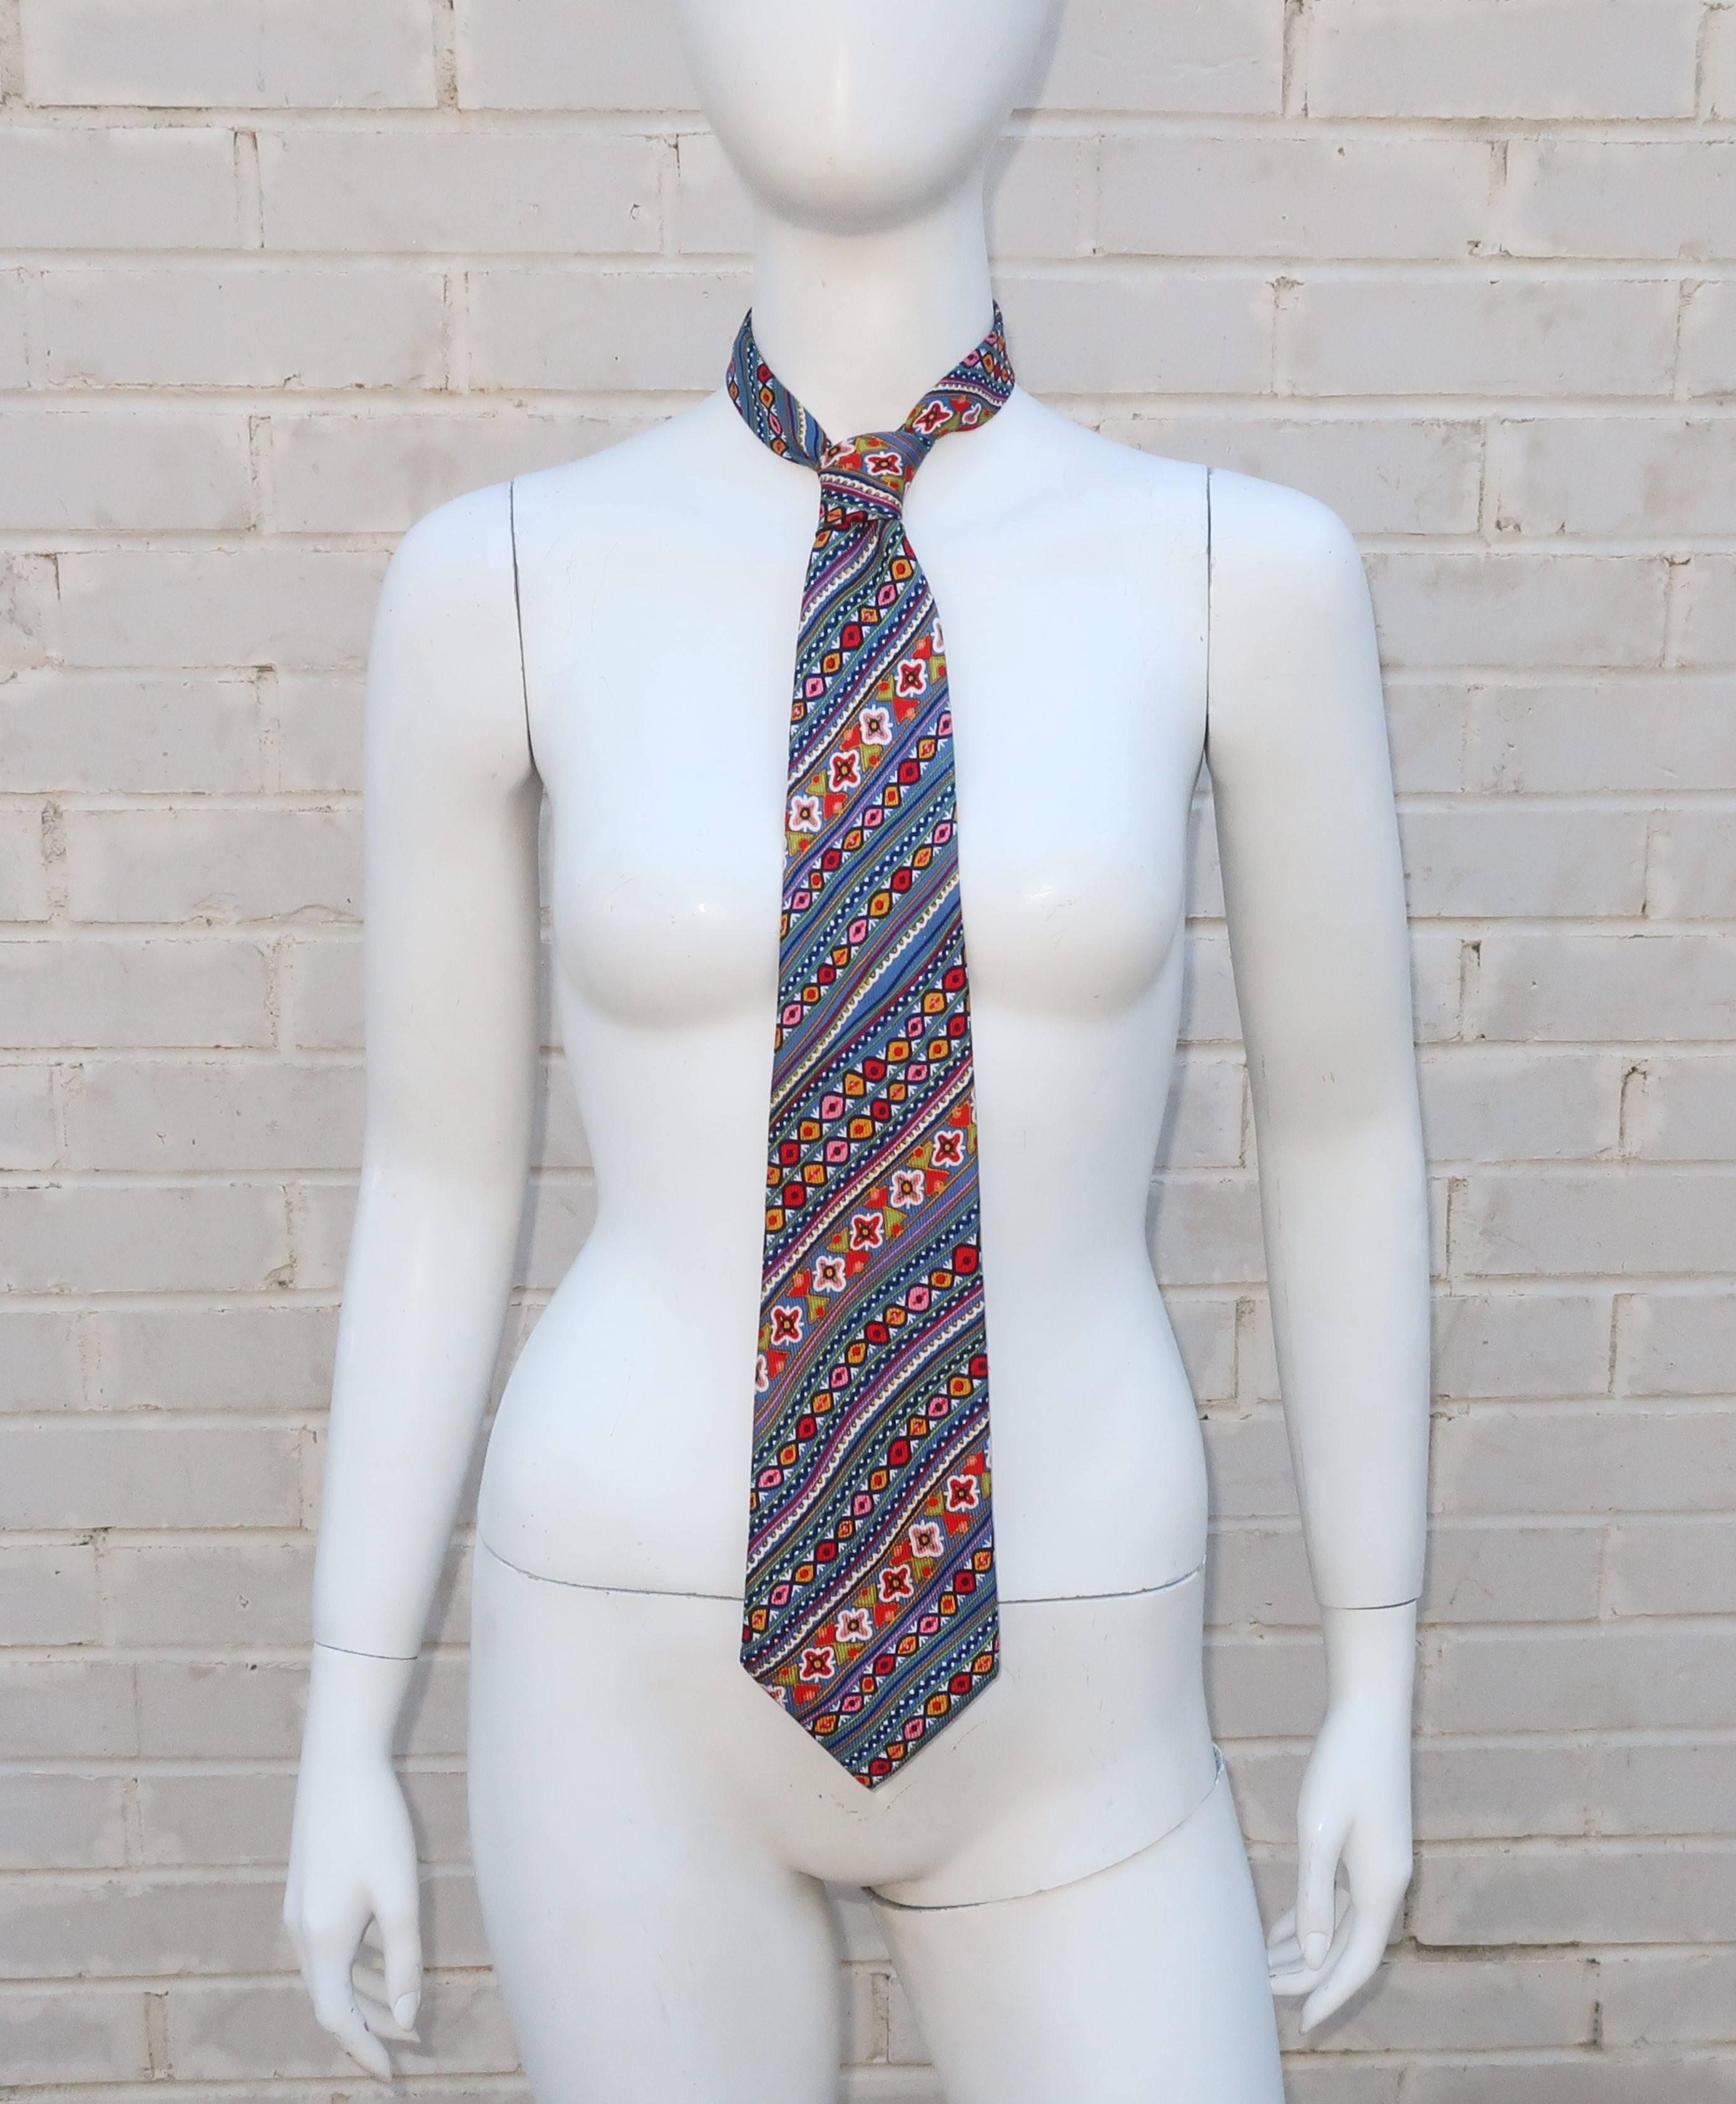 Vintage Christian Lacroix Men's Silk Necktie at 1stDibs | christian lacroix  ties